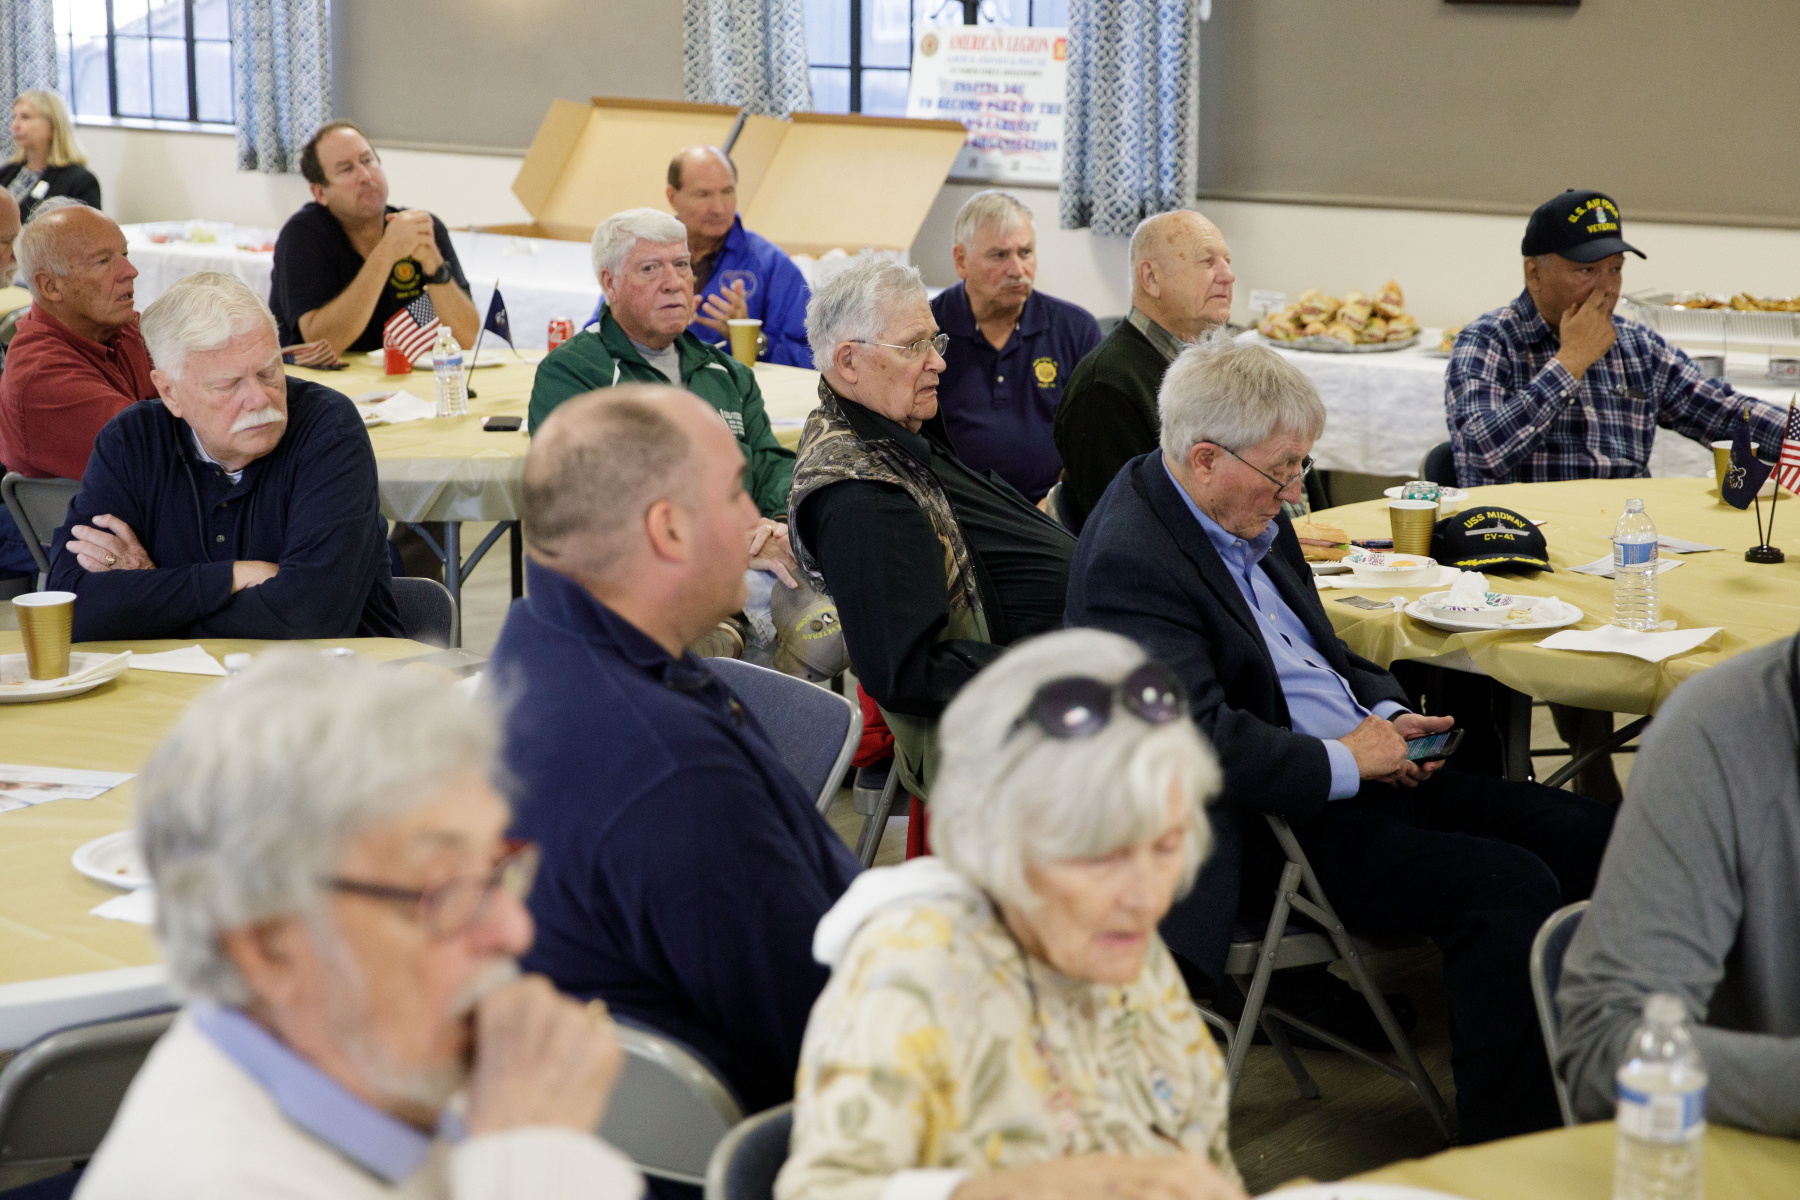 28 de octubre de 2021: El senador estatal Steve Santarsiero ofreció su almuerzo anual para veteranos.